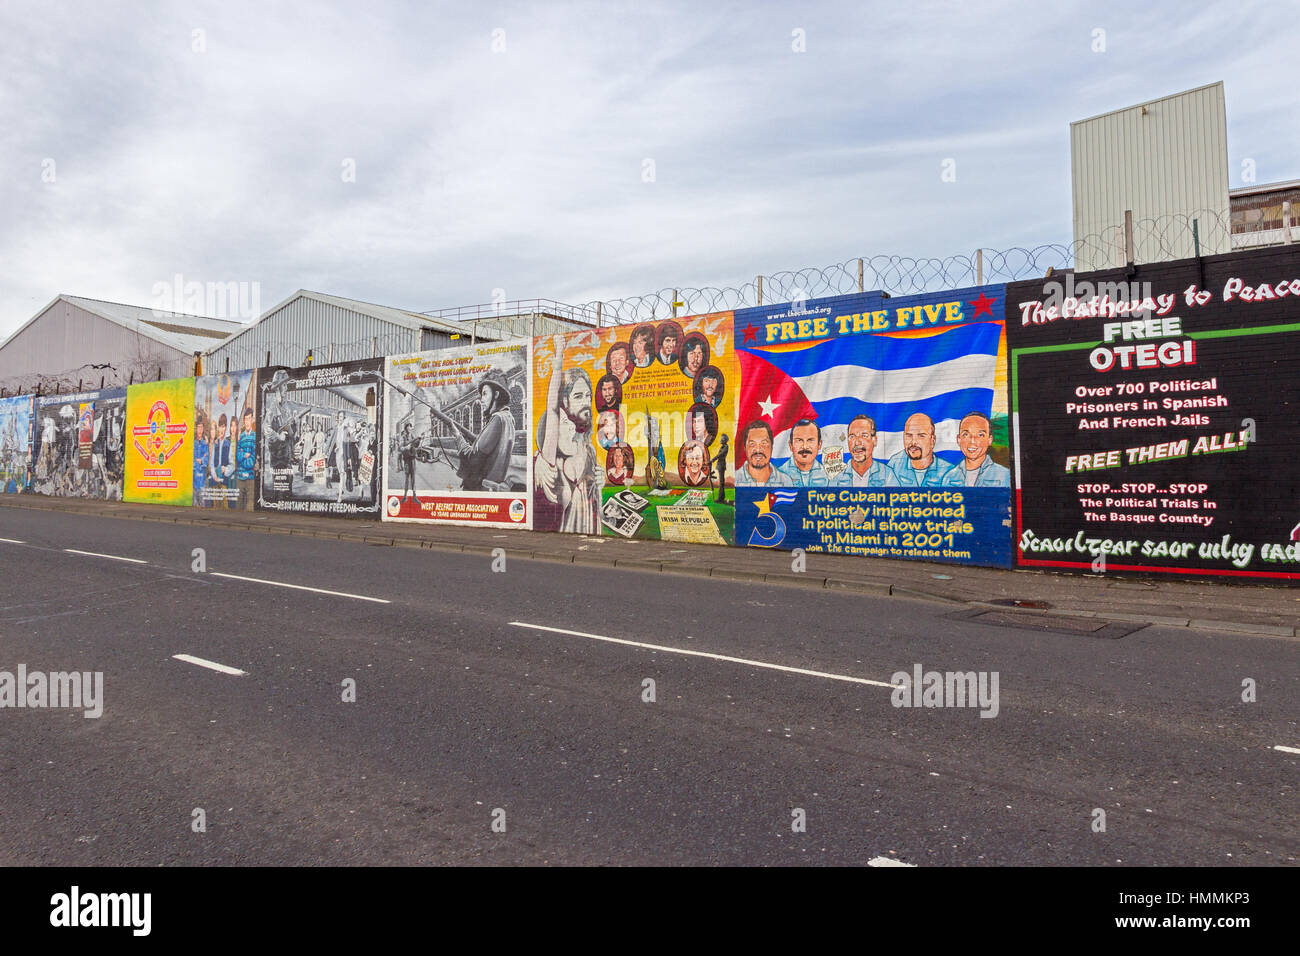 BELFAST, Nordirland - 9. Februar 2014: Politische Wandmalerei in Belfast, Nordirland. Falls Road ist bekannt für seine politischen Wandmalereien. Stockfoto